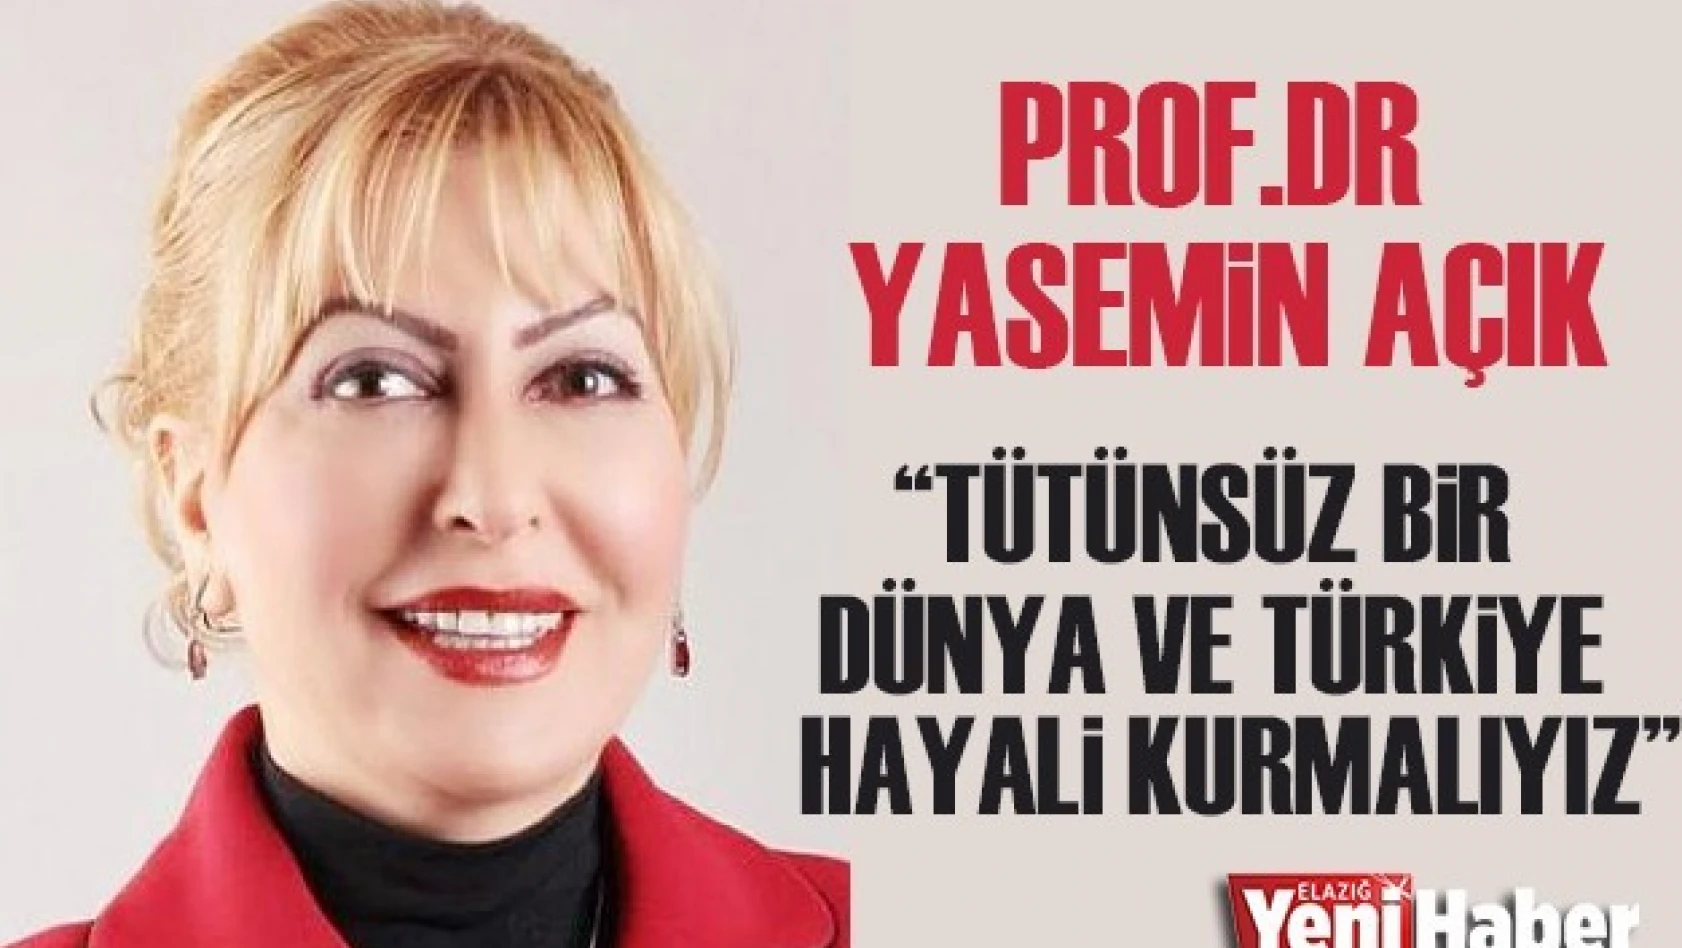 Prof. Dr. Yasemin Açık, Mesaj Yayınladı